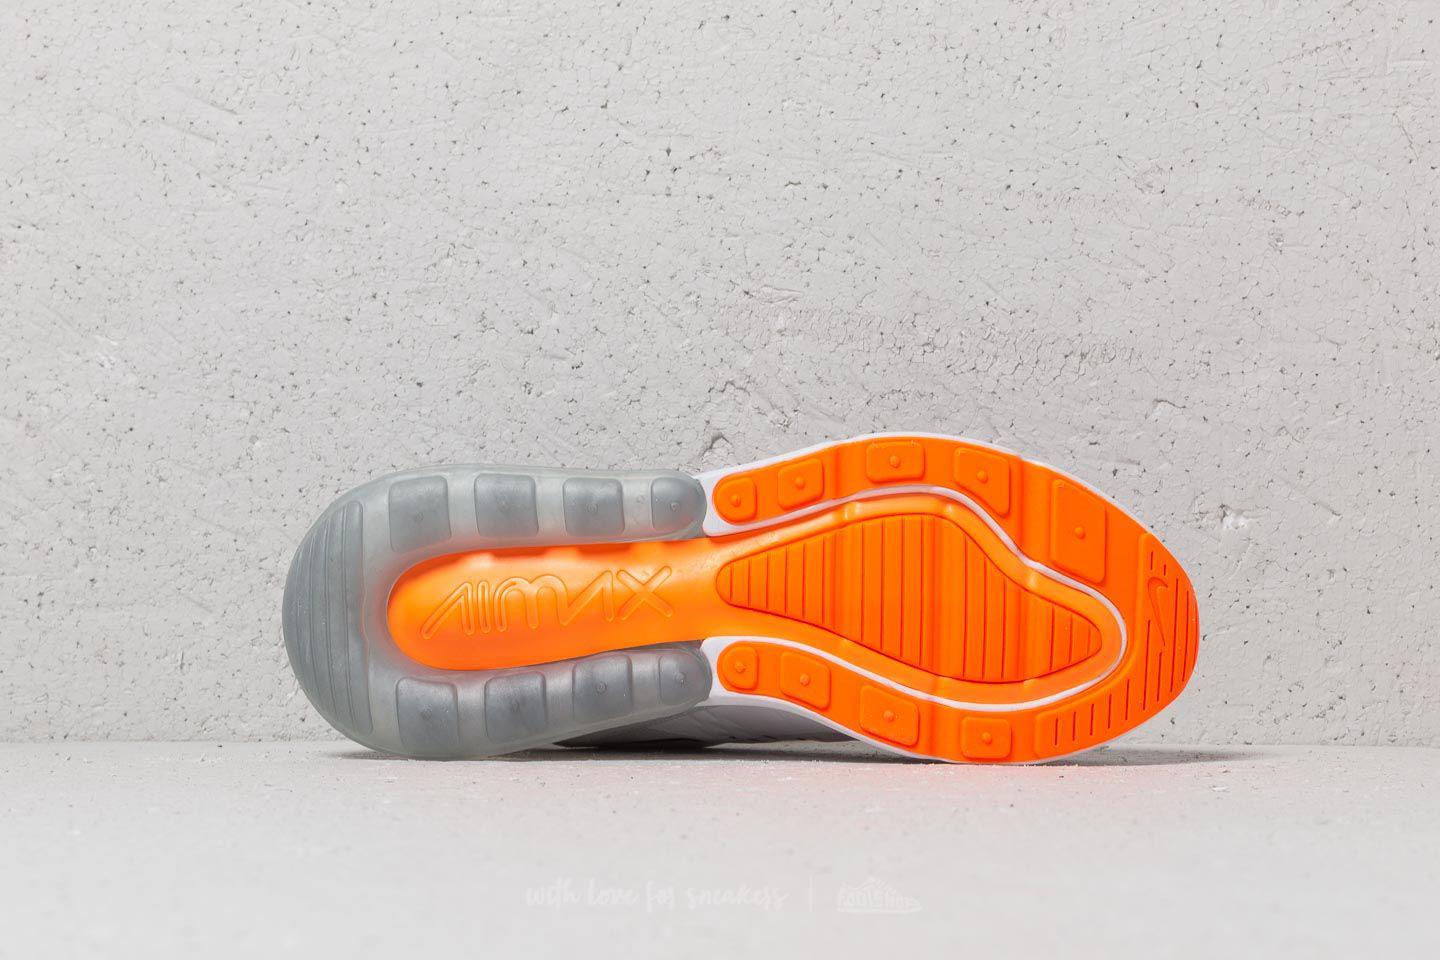 Nike Air Max 270 Total Orange Men's Shoe, 10